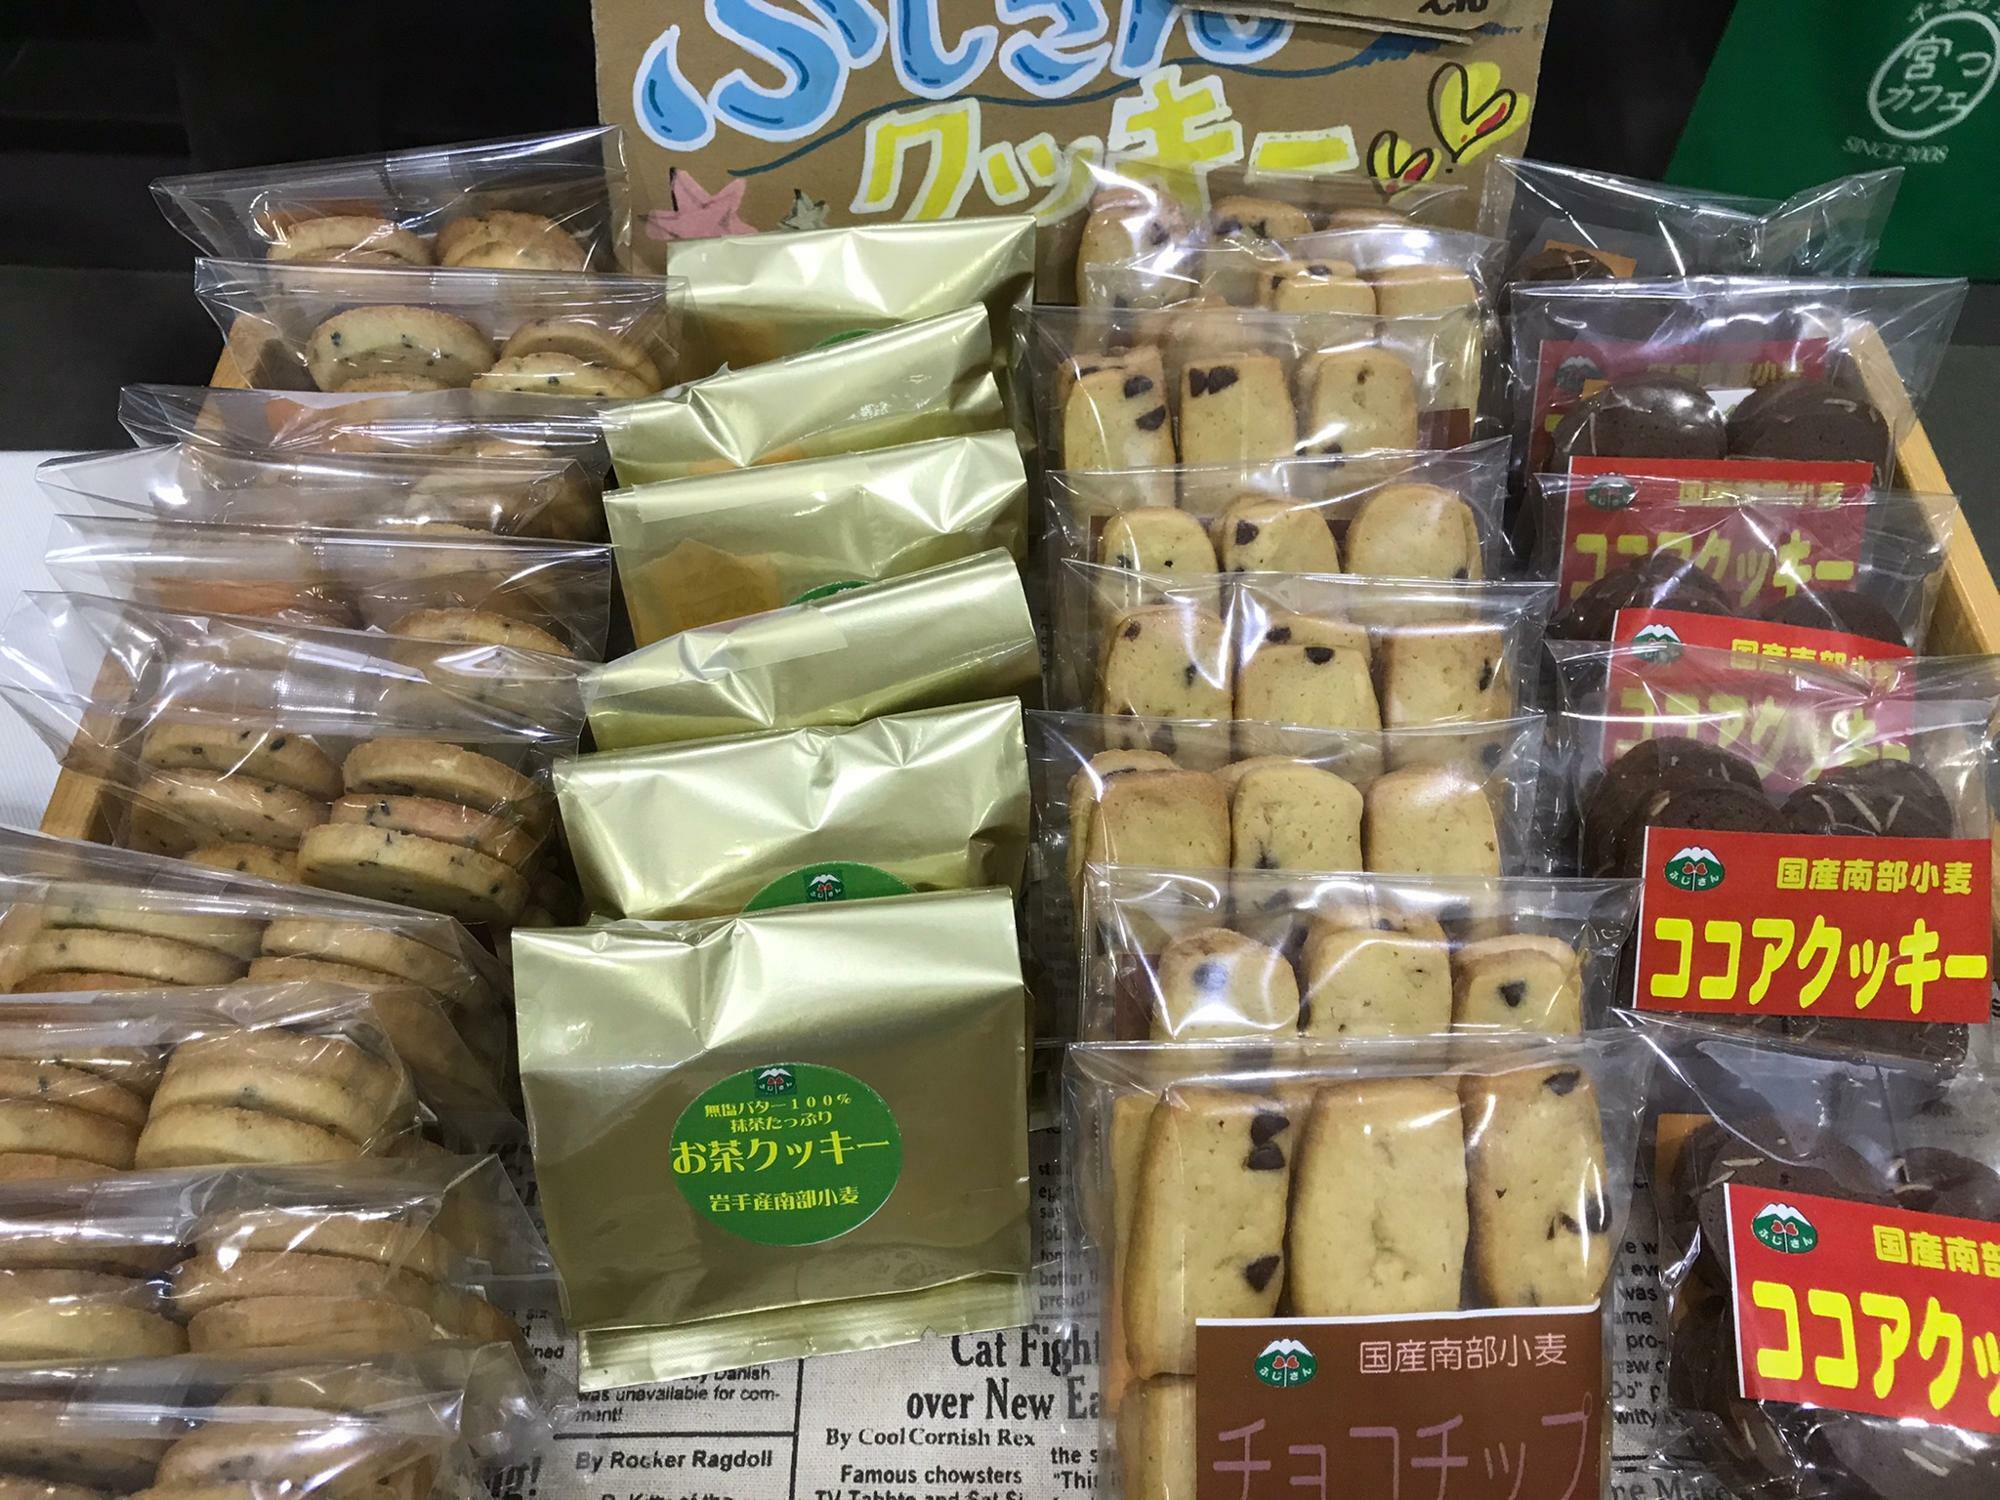 人気の富士山クッキーは売り切れでした。